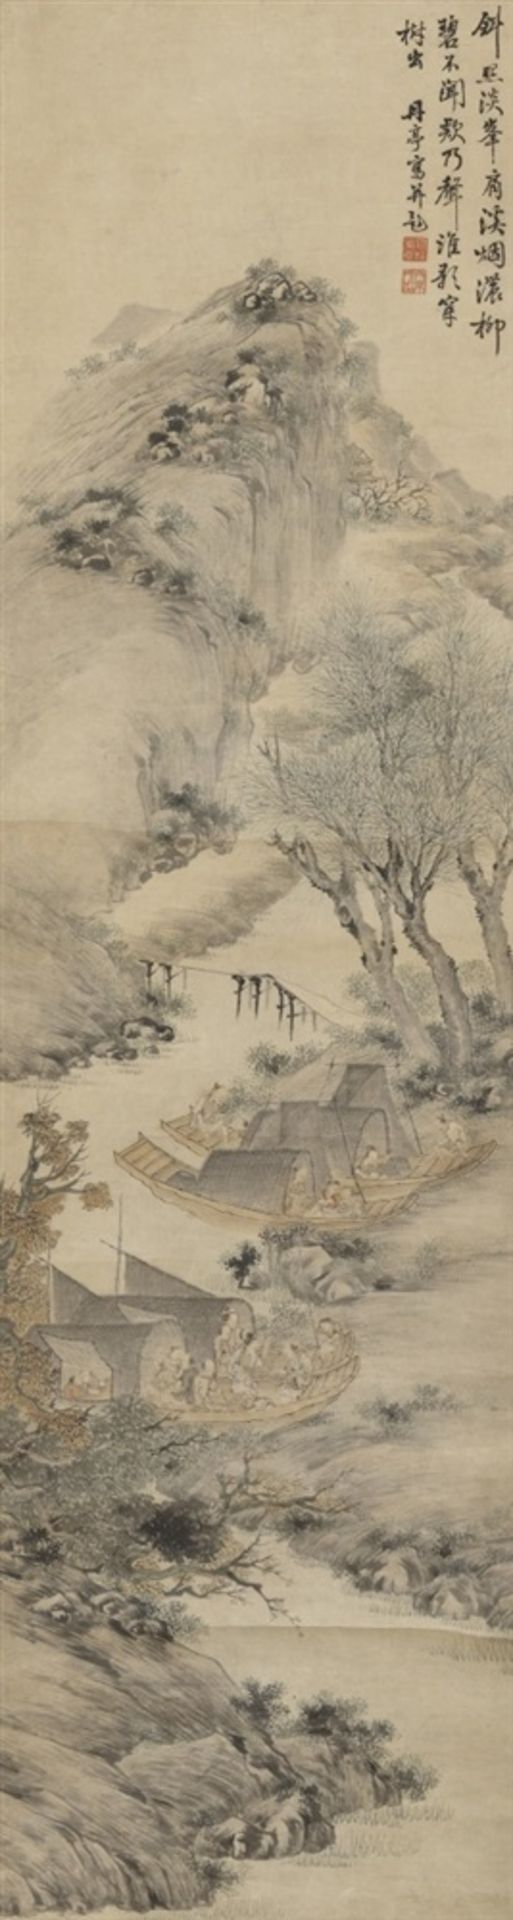 Hou Fengyuan . 19. Jh. Angler und ihre Familien in Hausbooten am Ufer unter Weiden. Hängerolle.